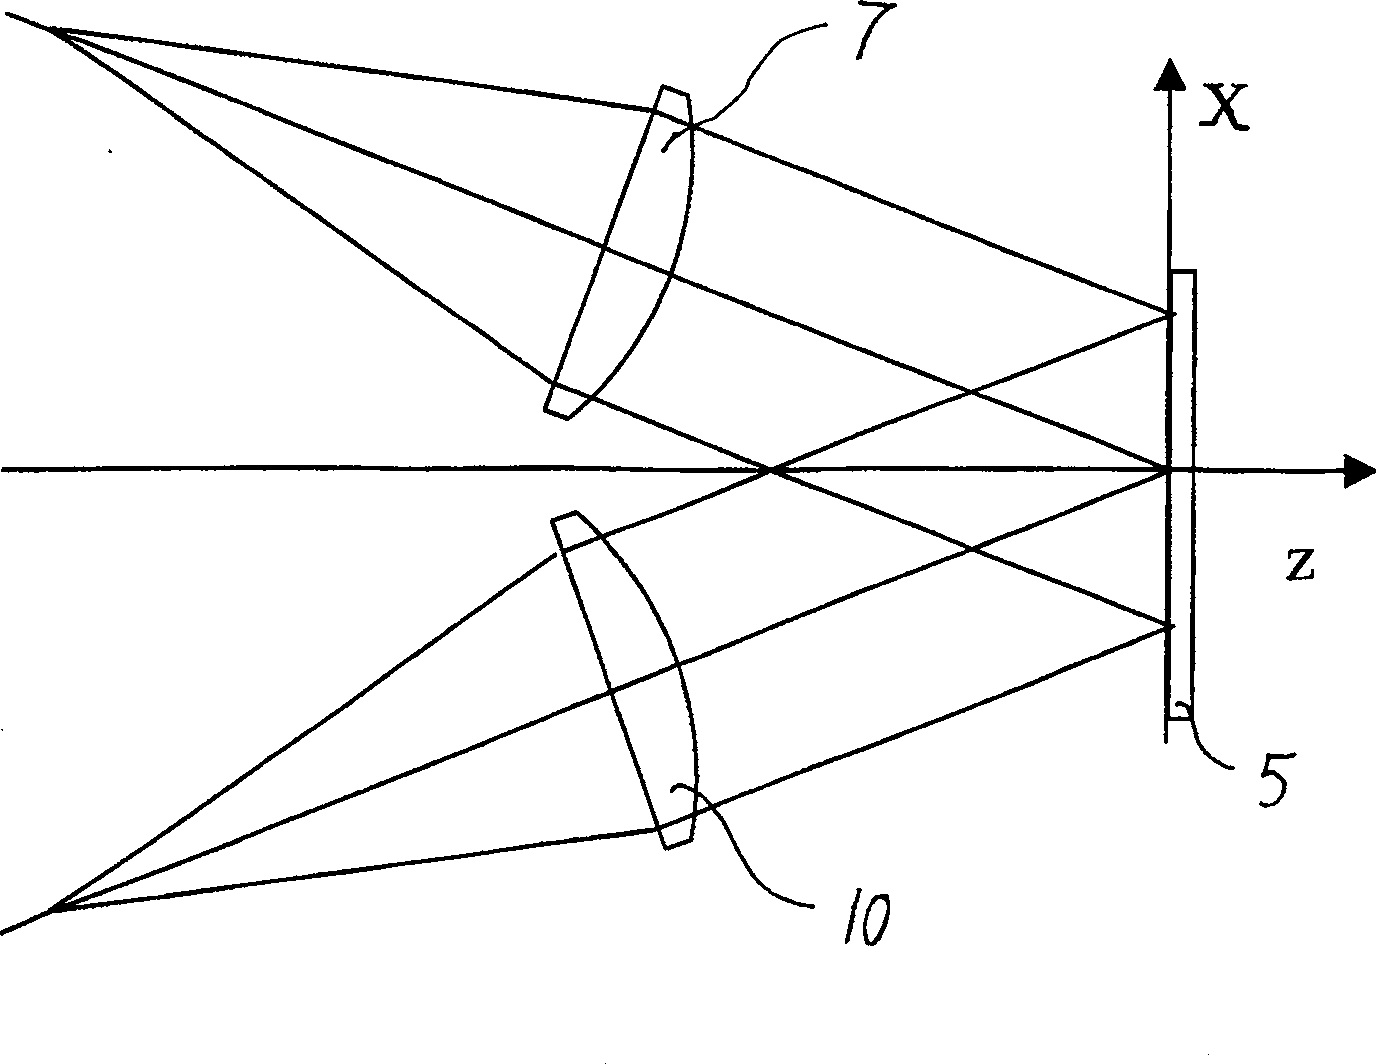 Moire fringes adjusting method for holographic grating making optical path